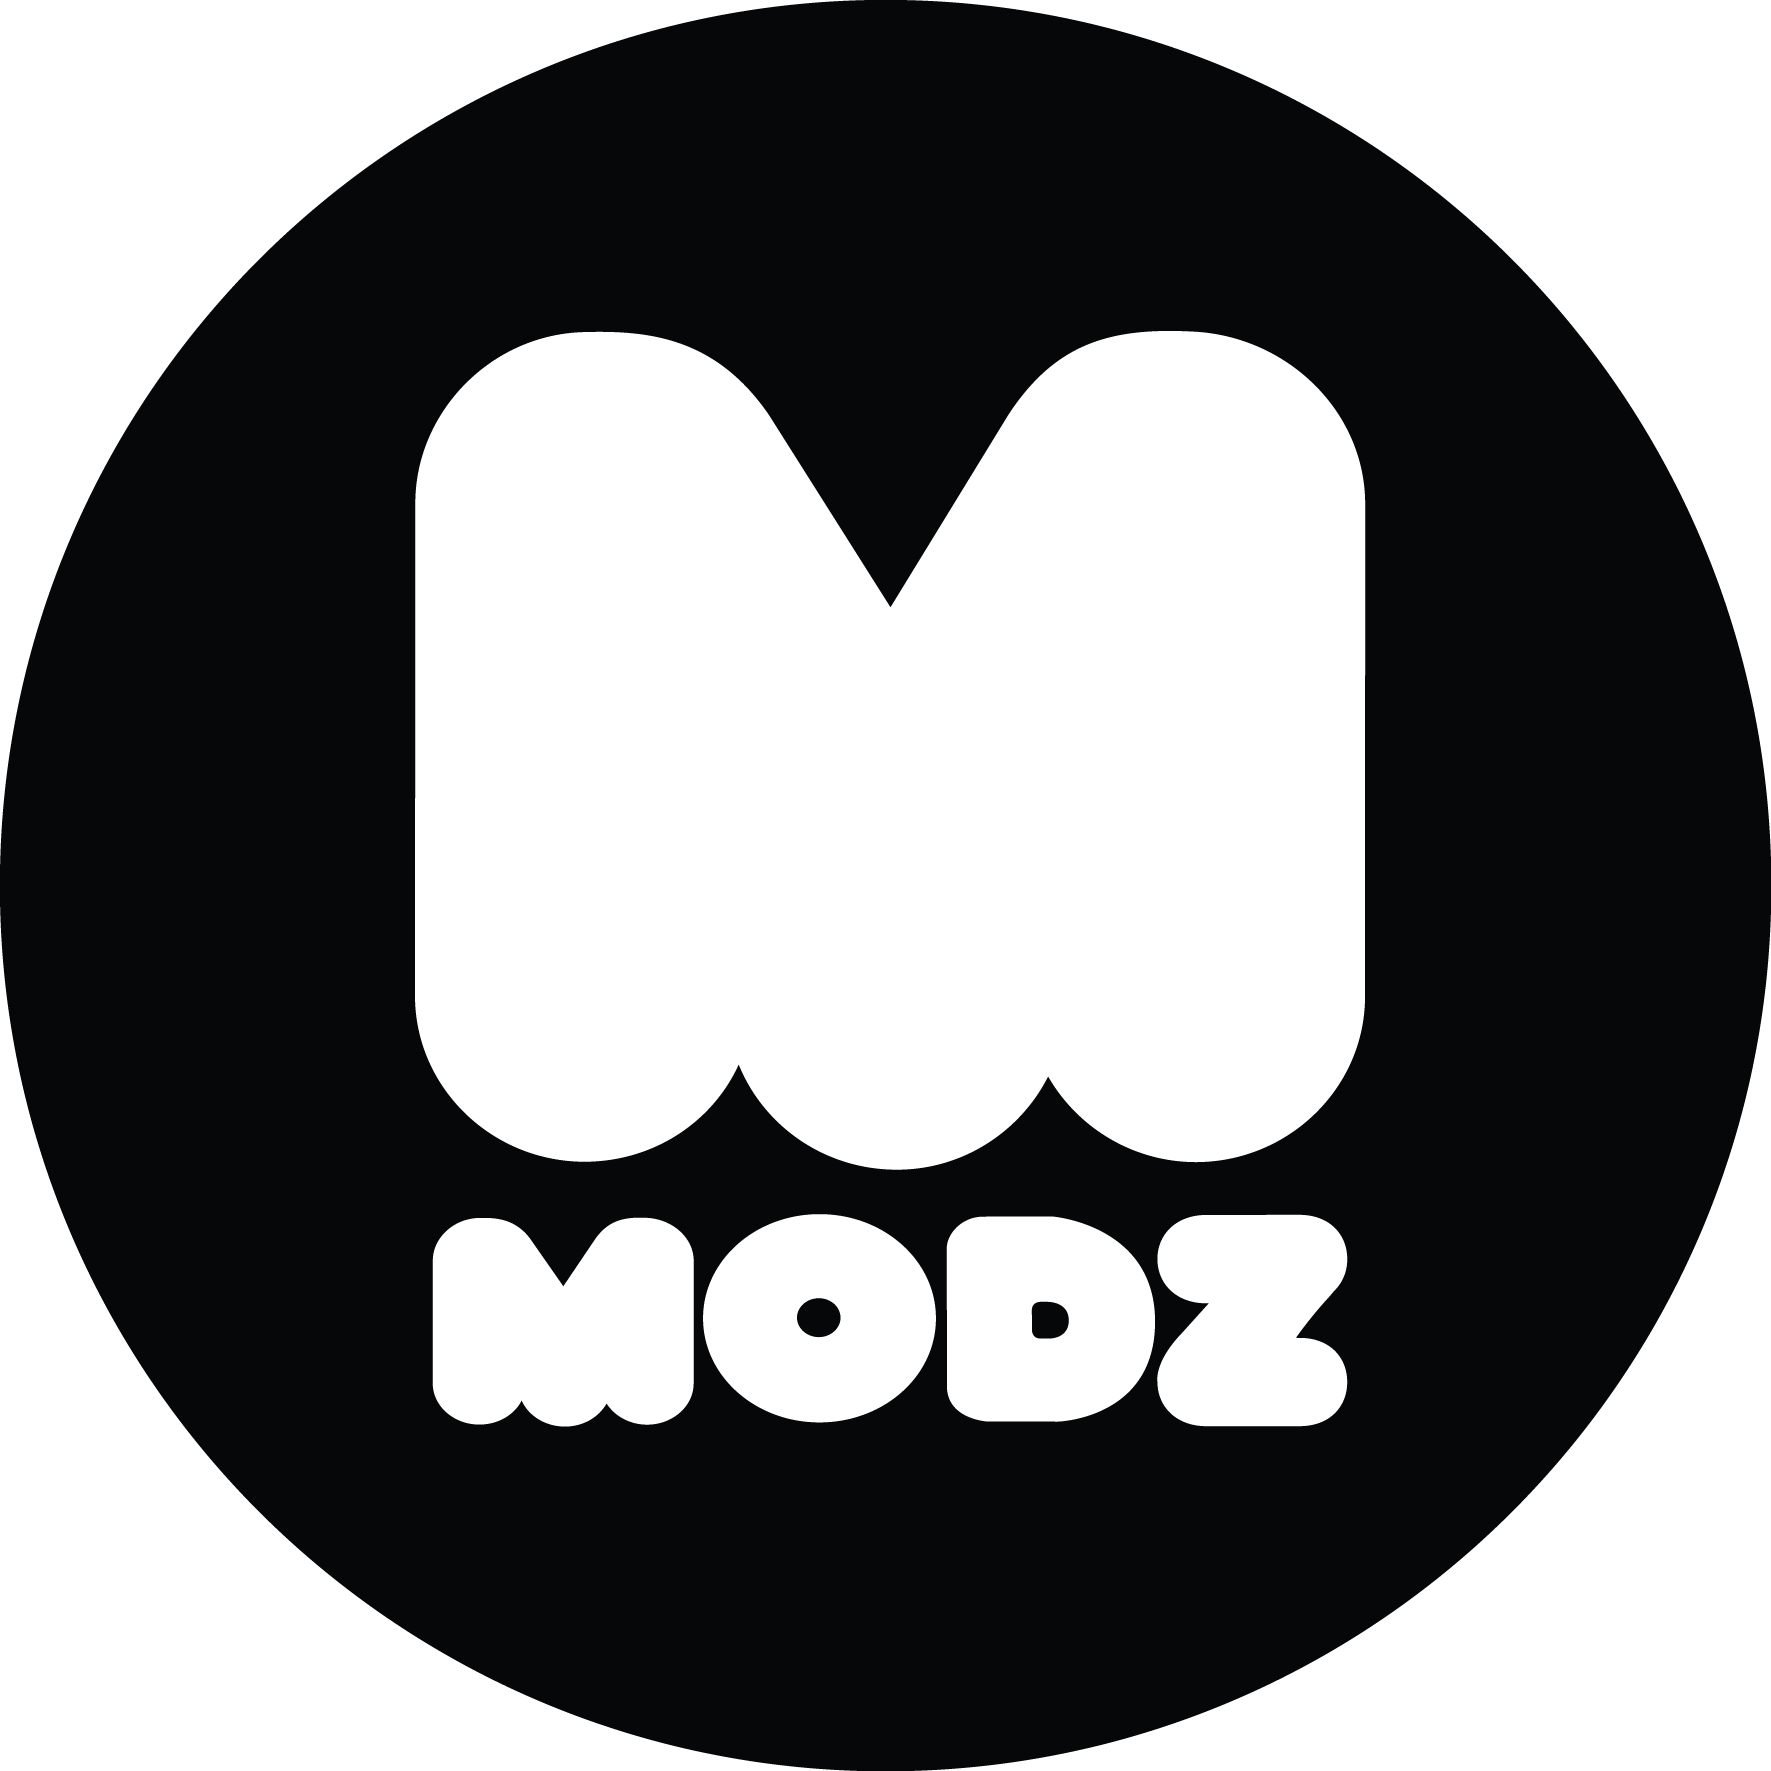 Modz logo